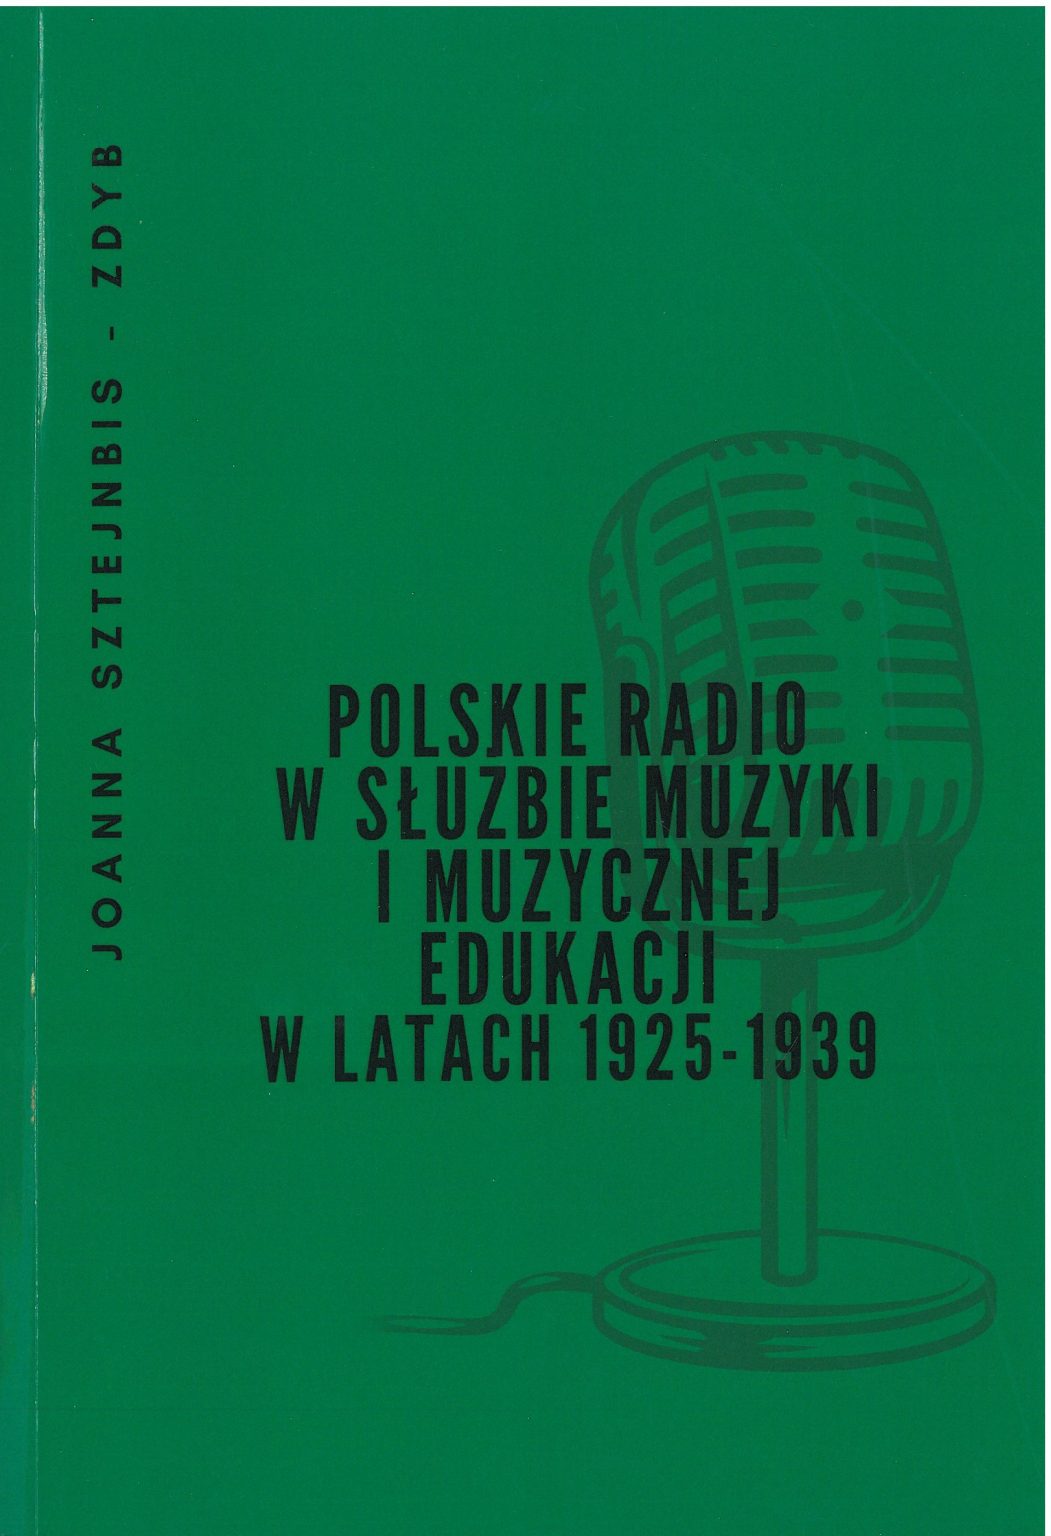 Polskie radio w służbie muzyki i muzycznej edukacji w latach 1925-1939 (J.Sztejnbis-Zdyb)